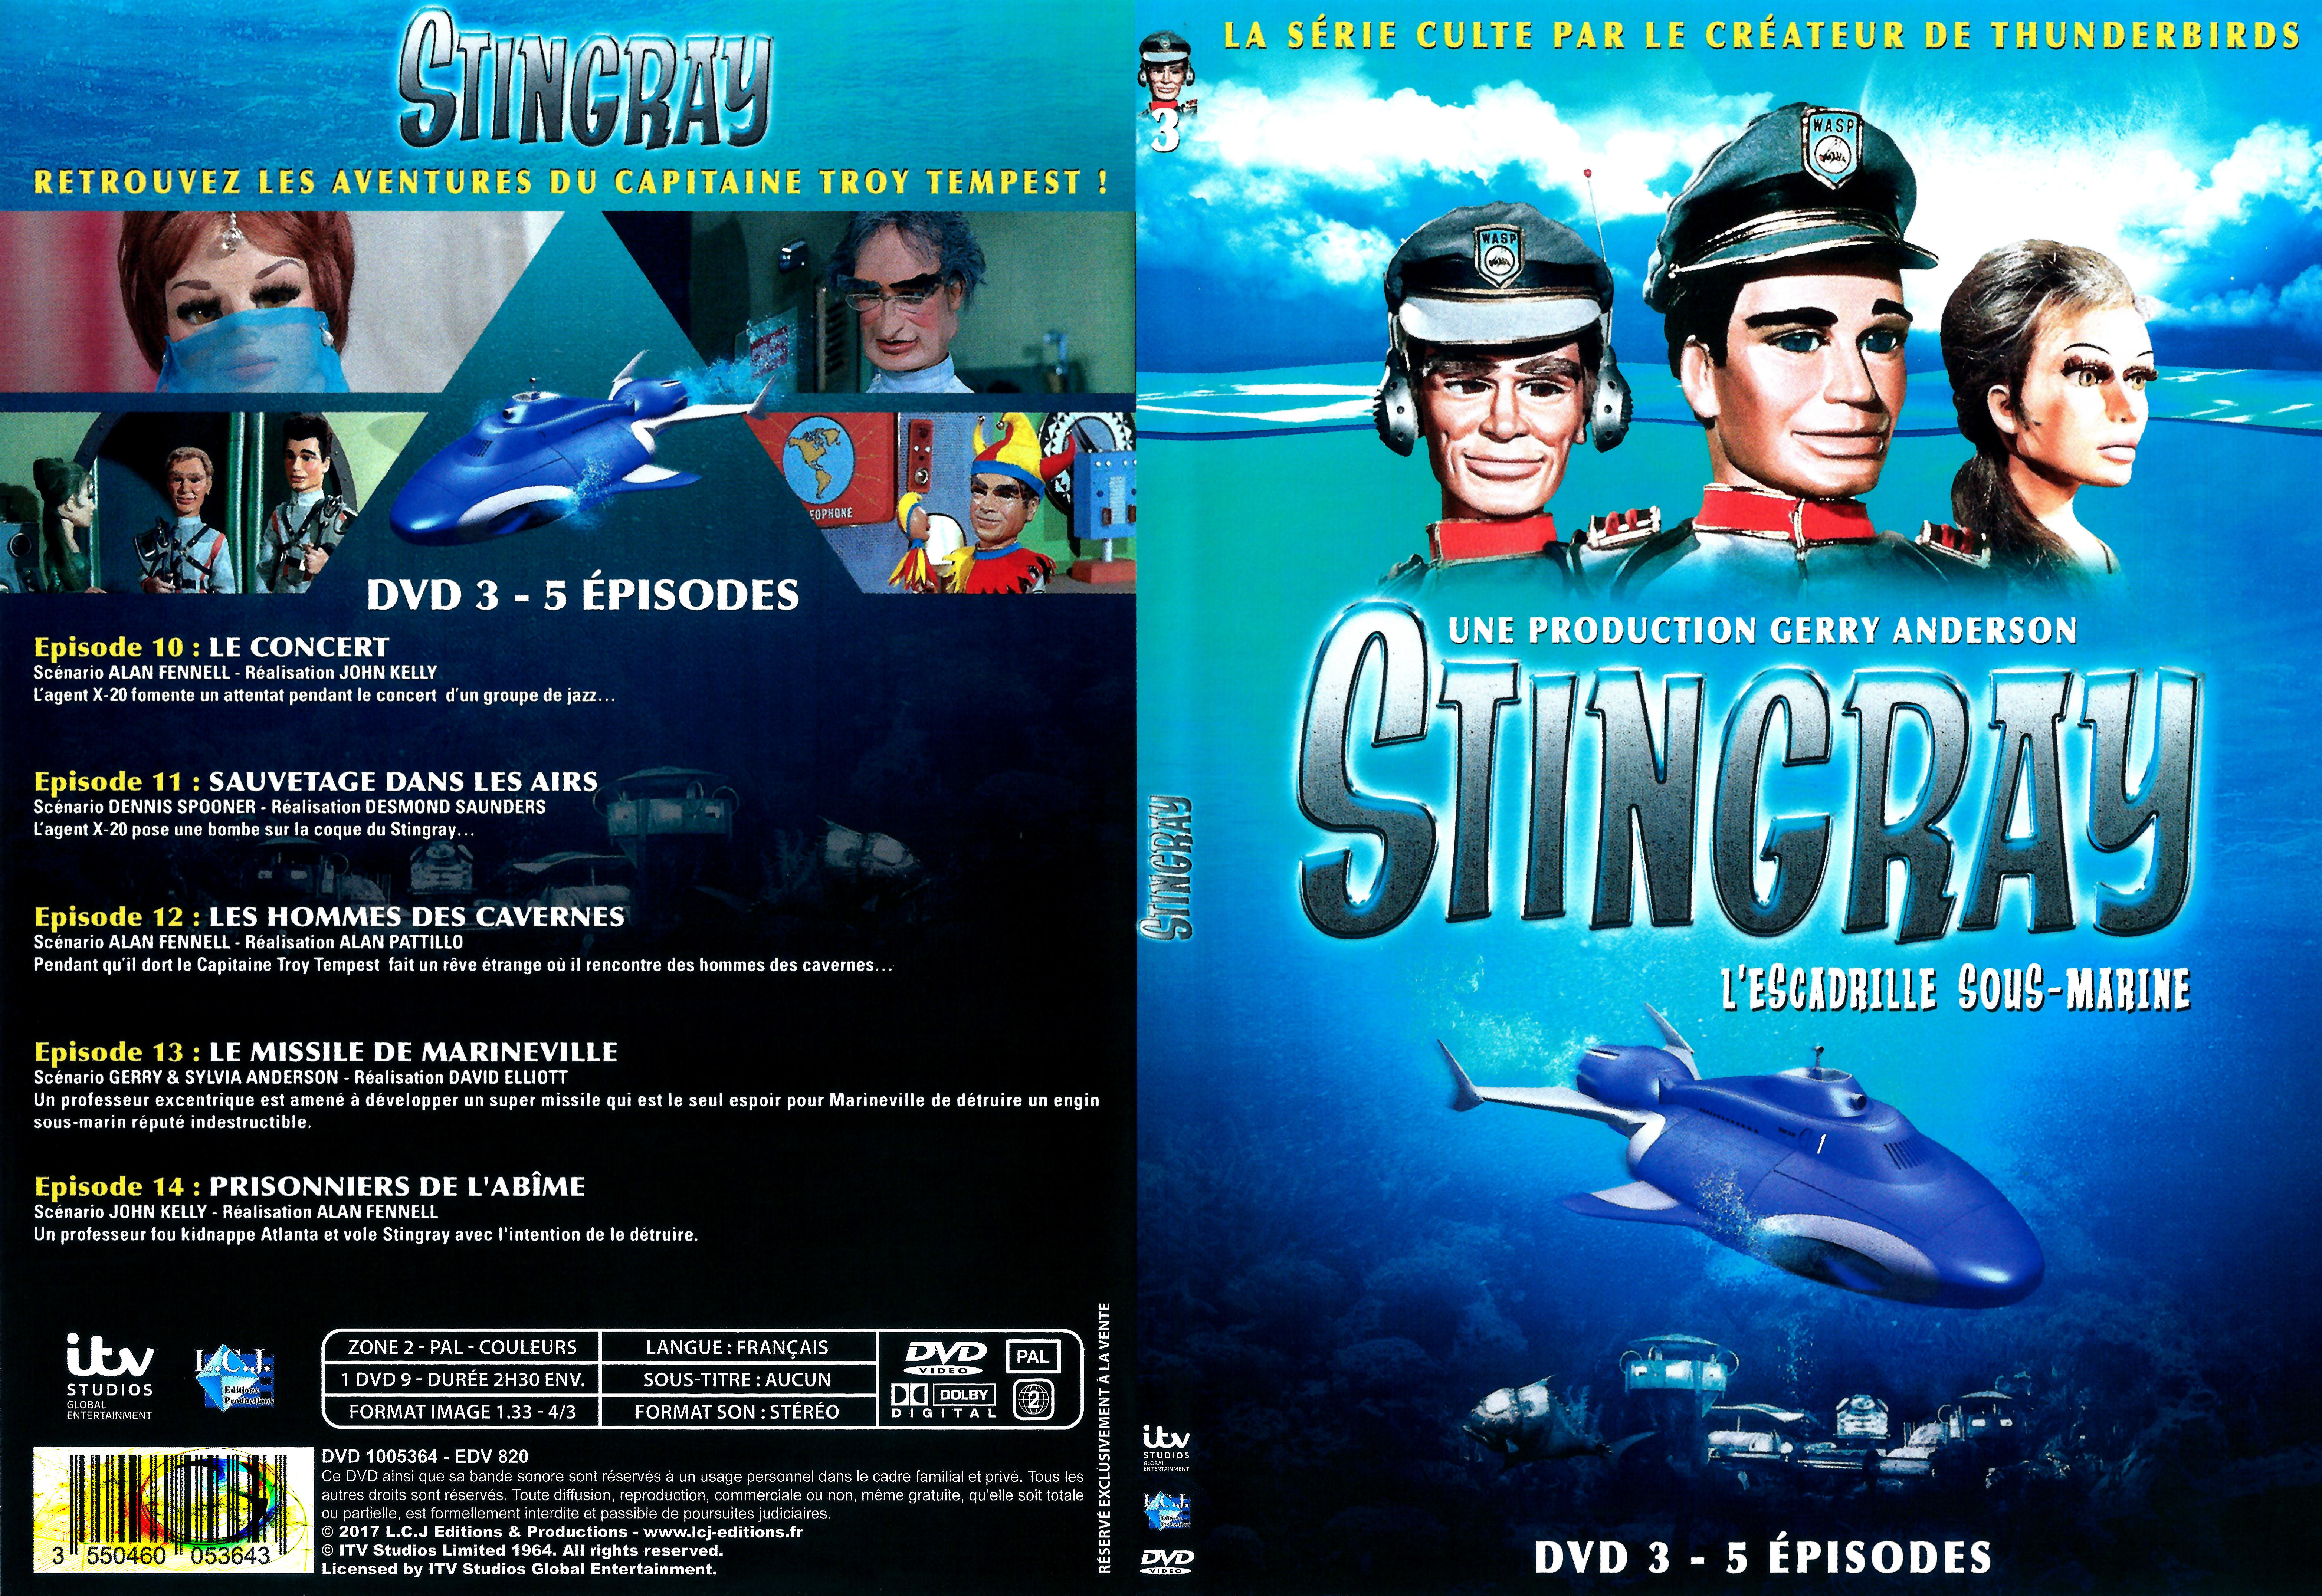 Jaquette DVD Stingray Saison 2 DVD 3